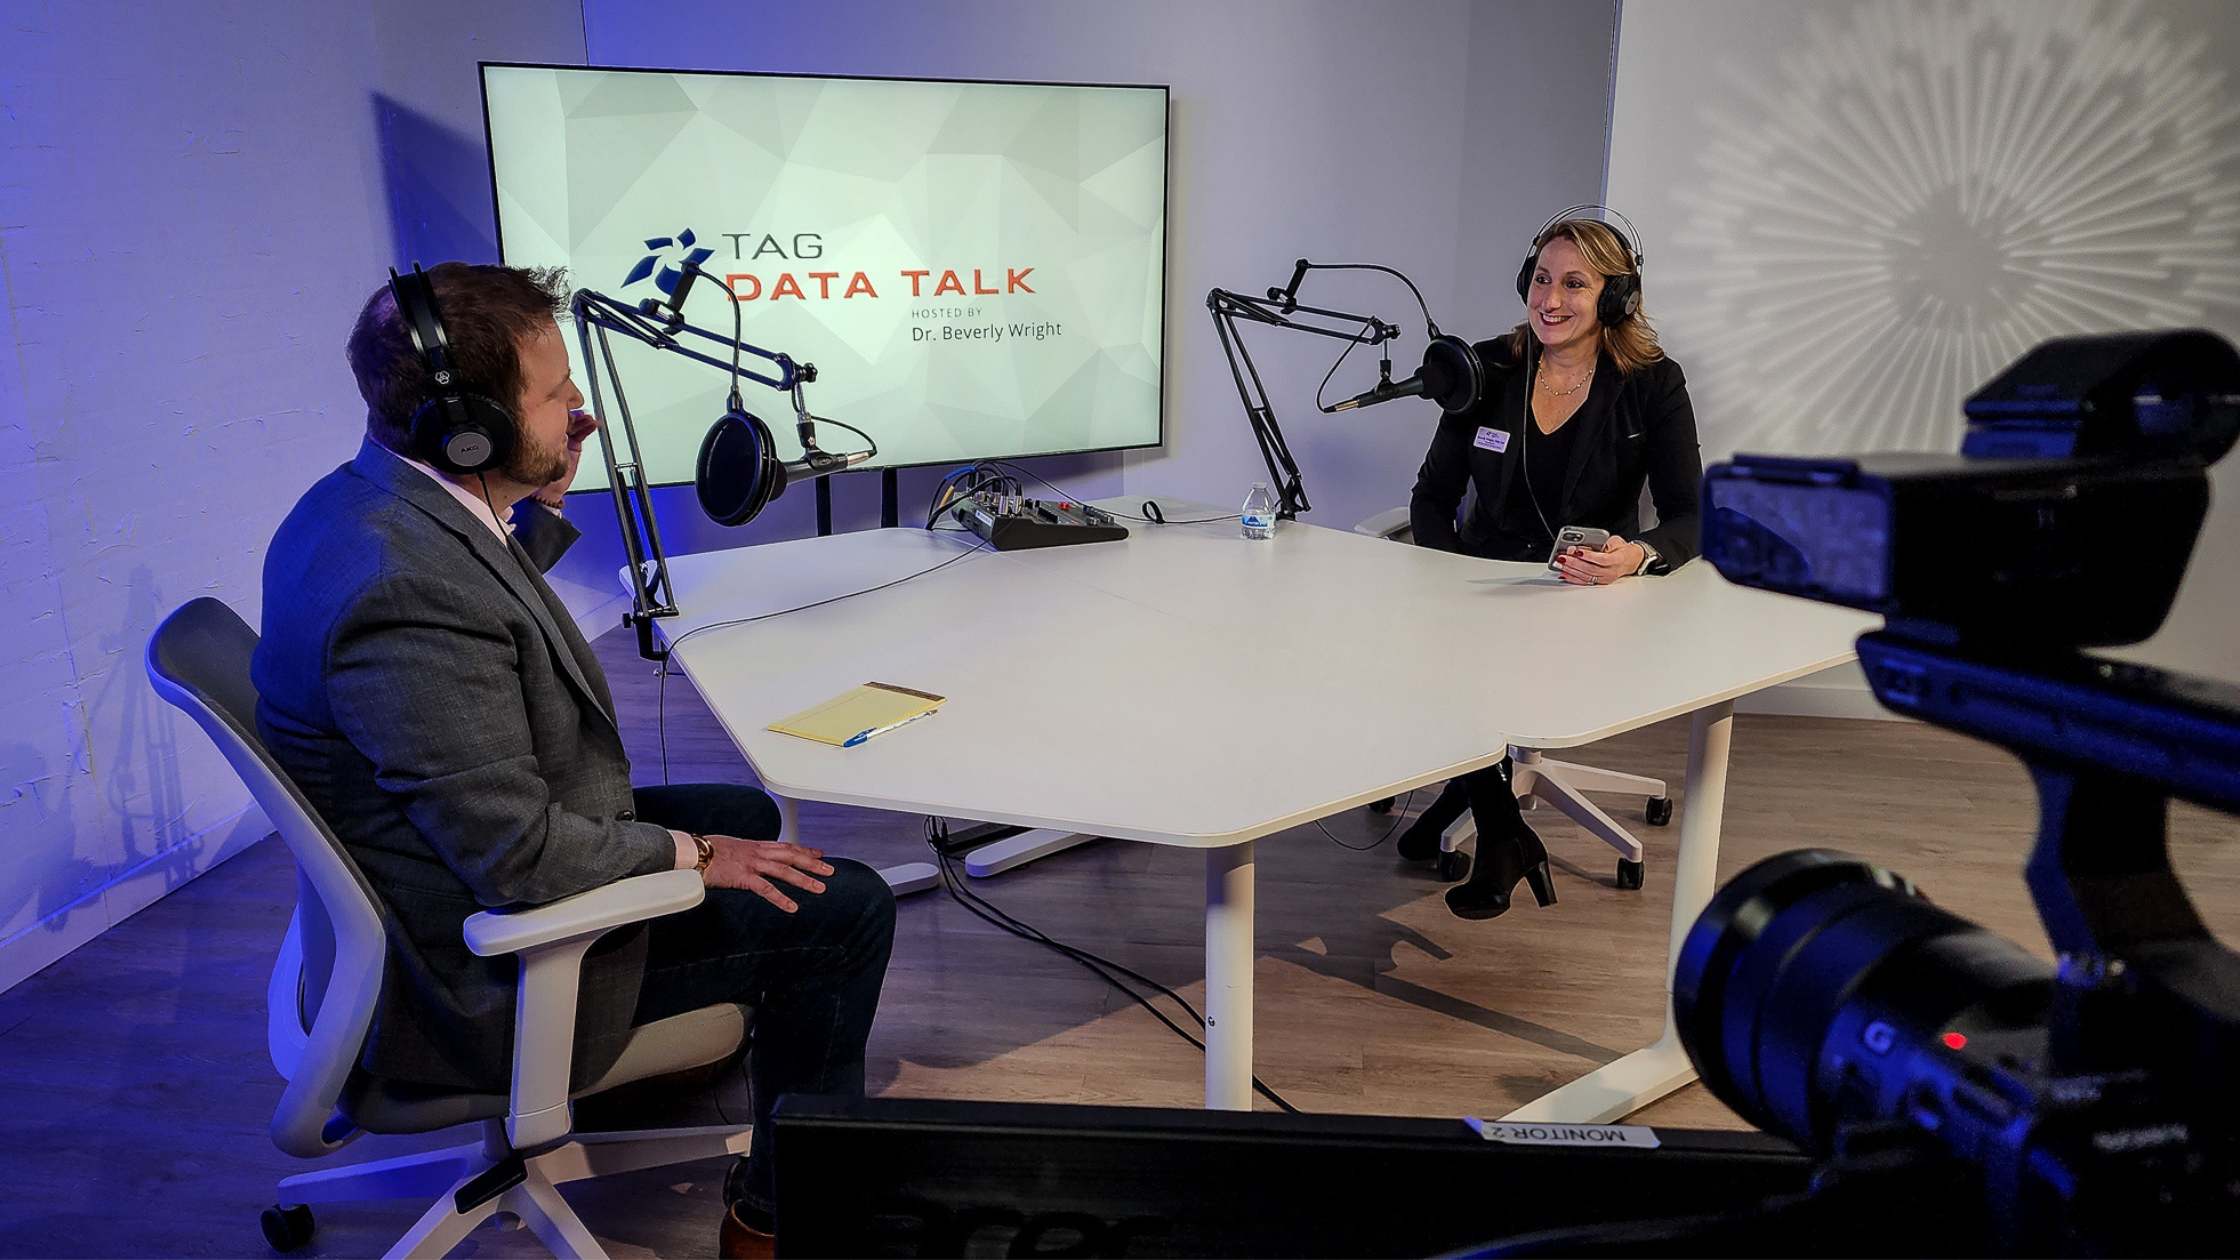 TAG Data Talk Podcast filmed at Valere Studios